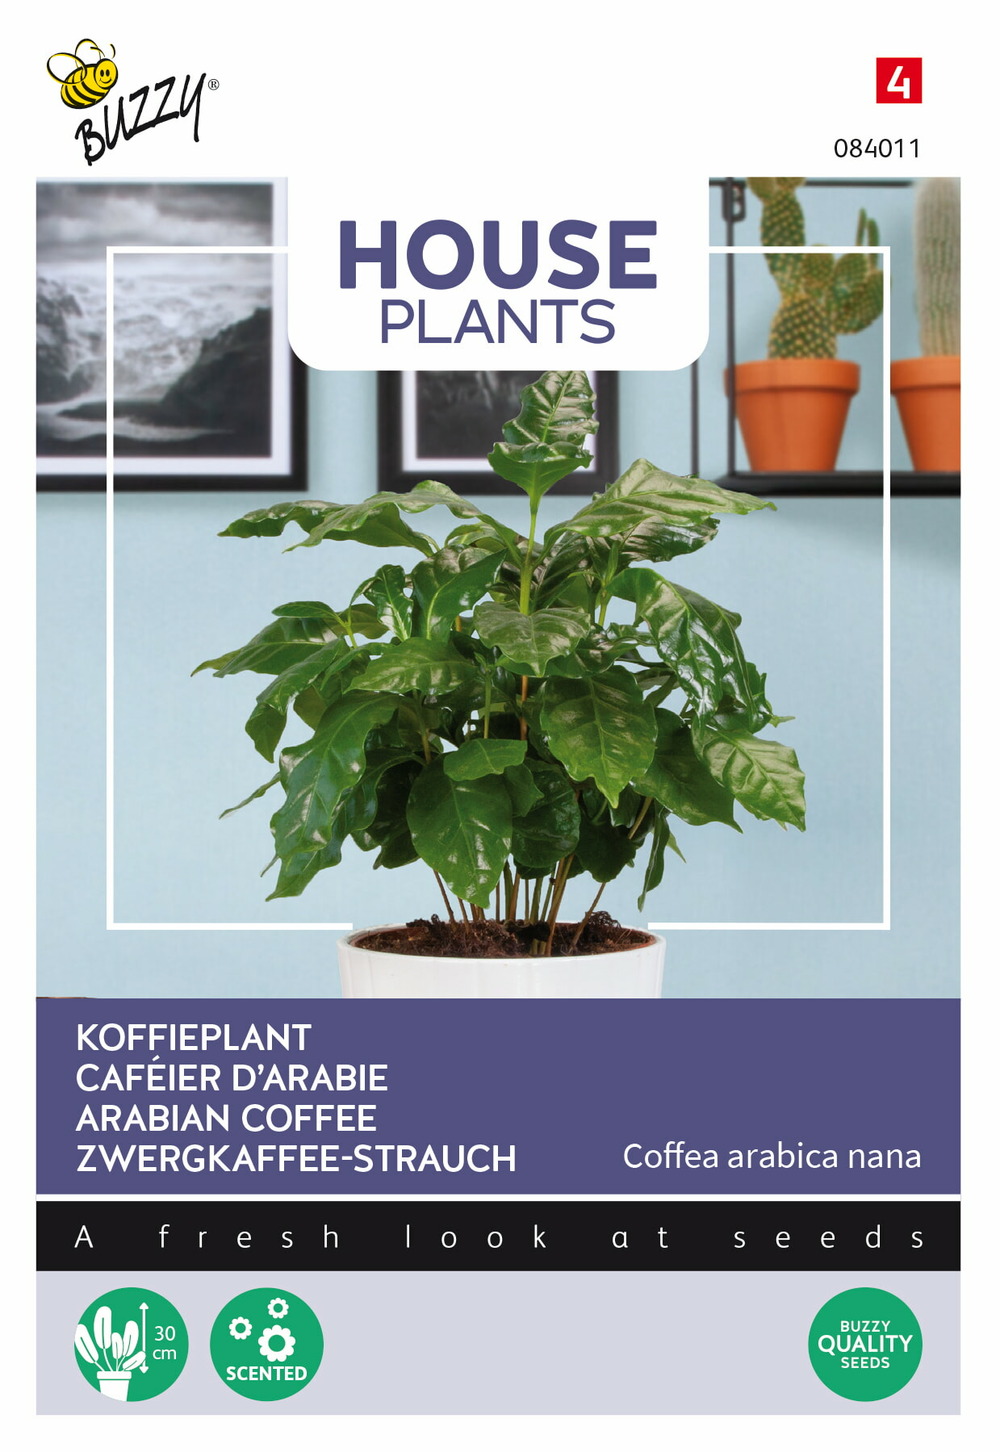 Buzzy house plants coffea arabica, caféier d'arabie - ca. 15 graines